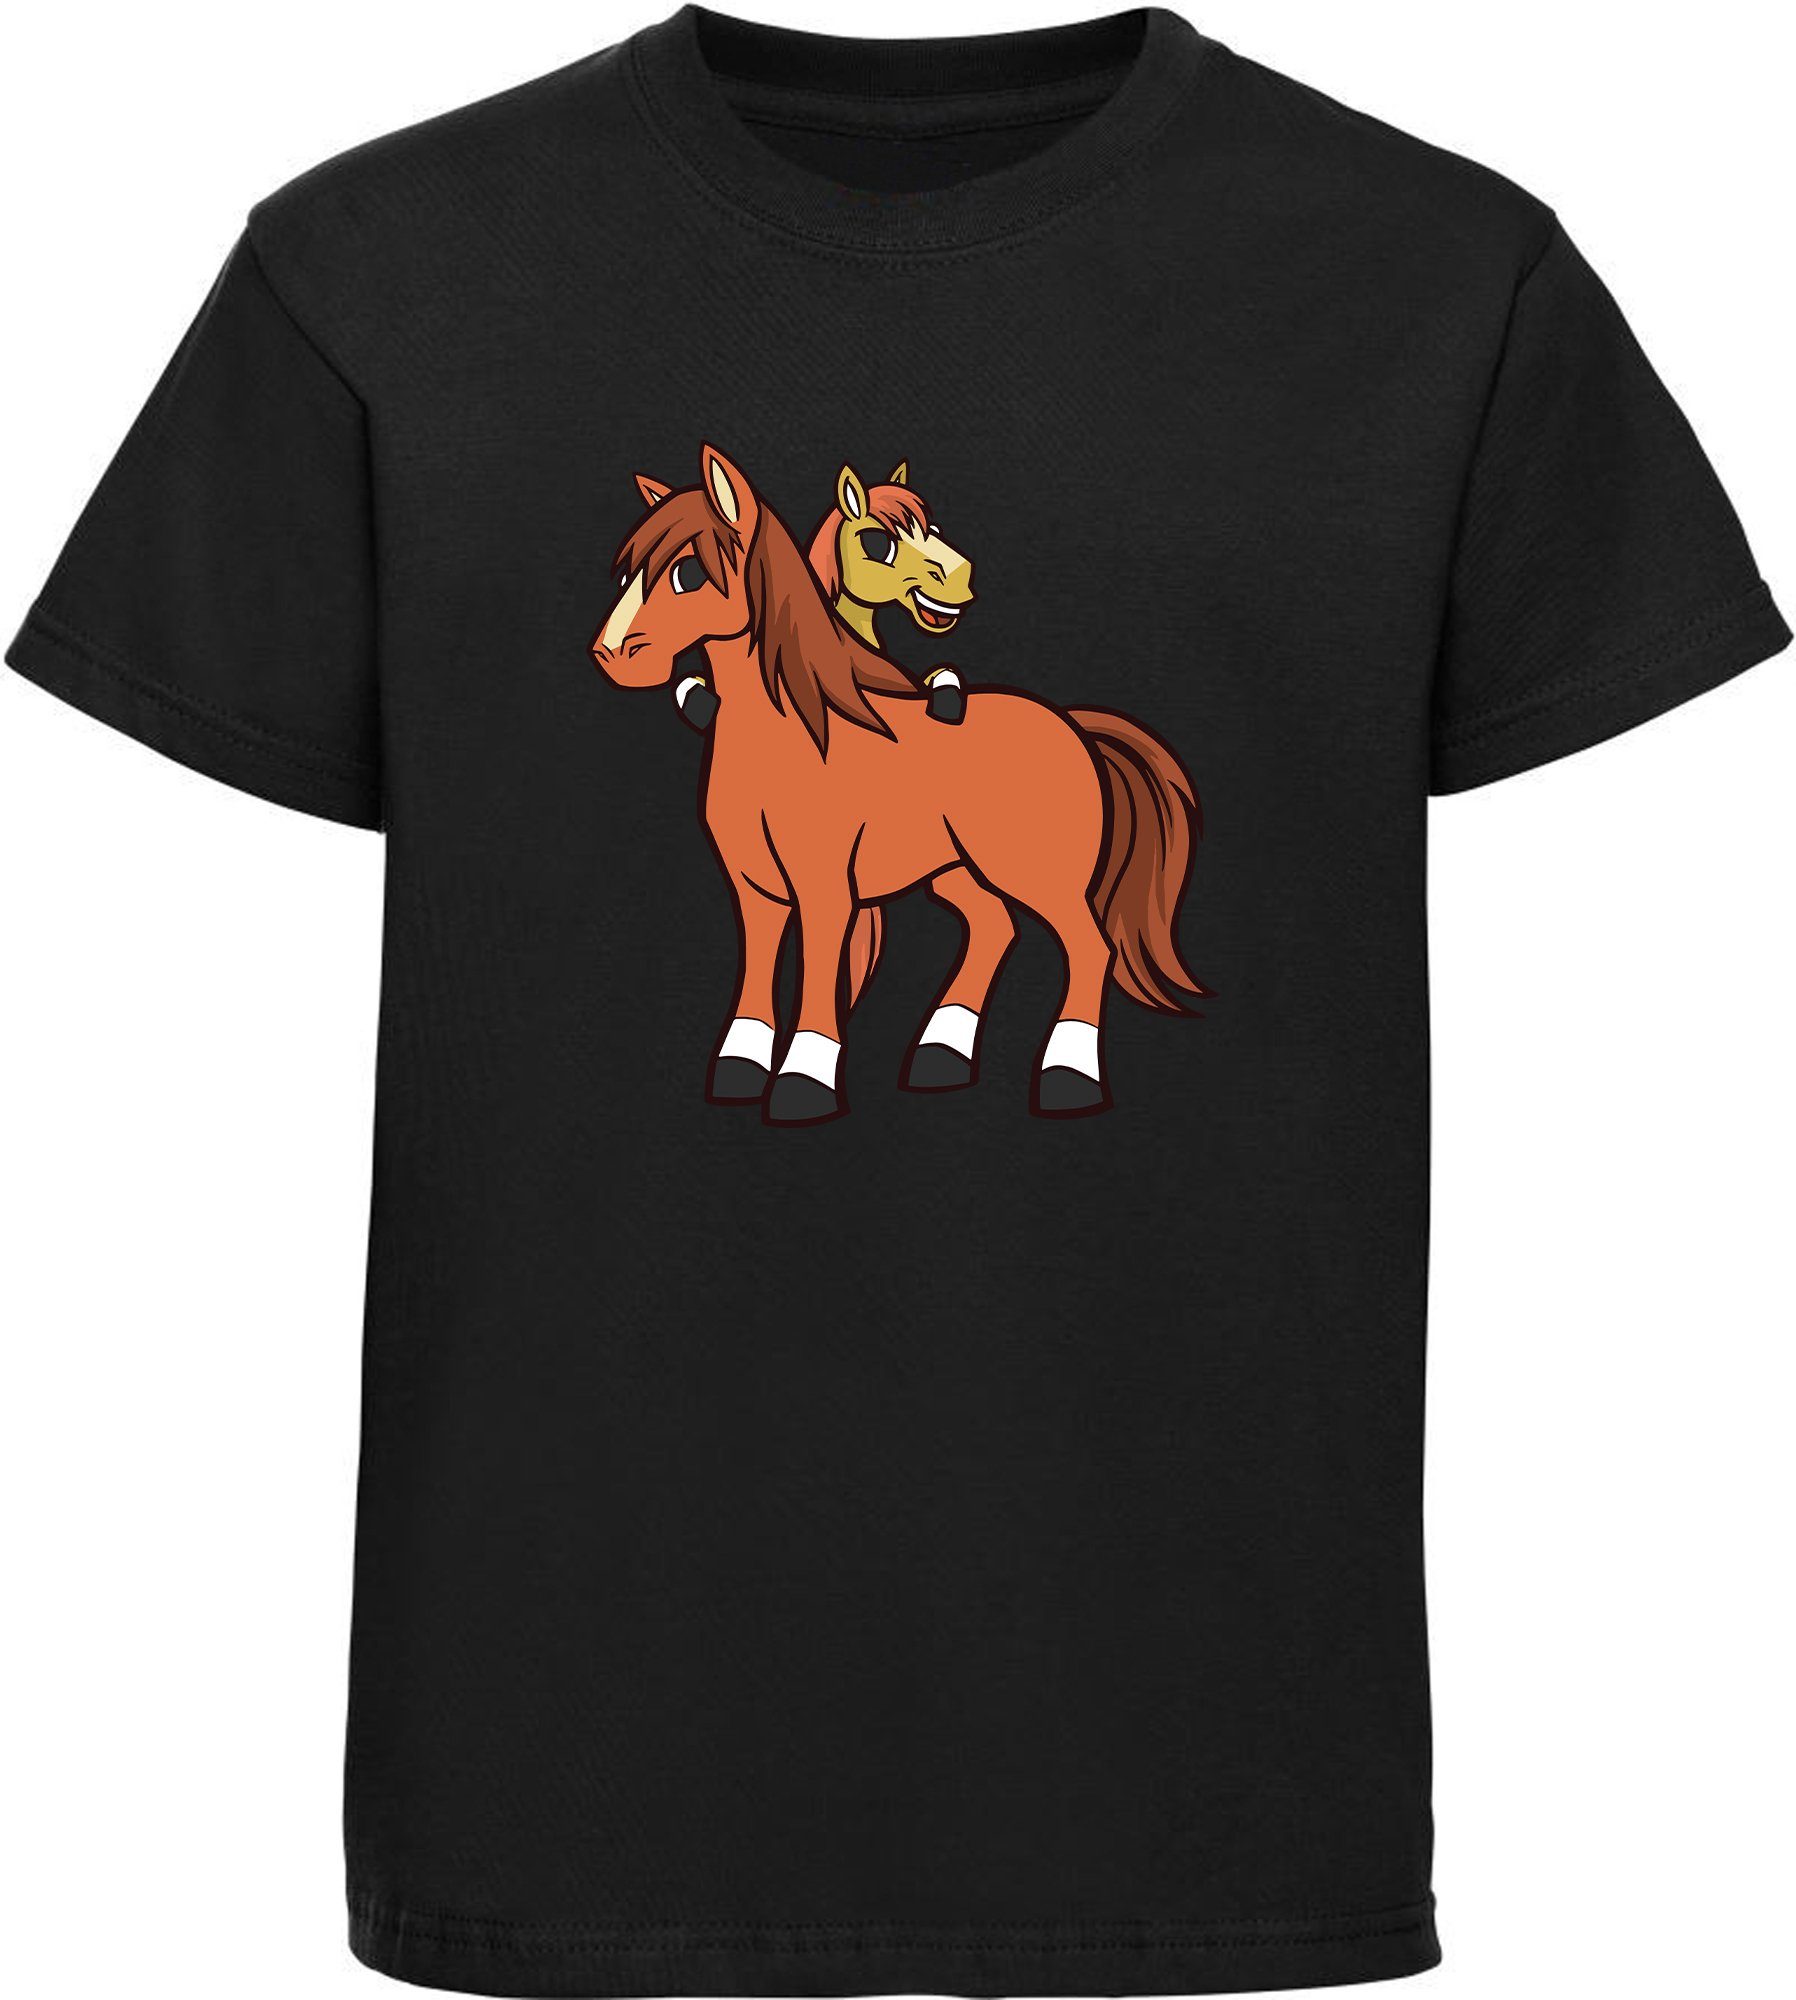 MyDesign24 T-Shirt Kinder i251 schwarz bedruckt mit Baumwollshirt Print cartoon 2 Shirt Pferde Aufdruck, - Pferde